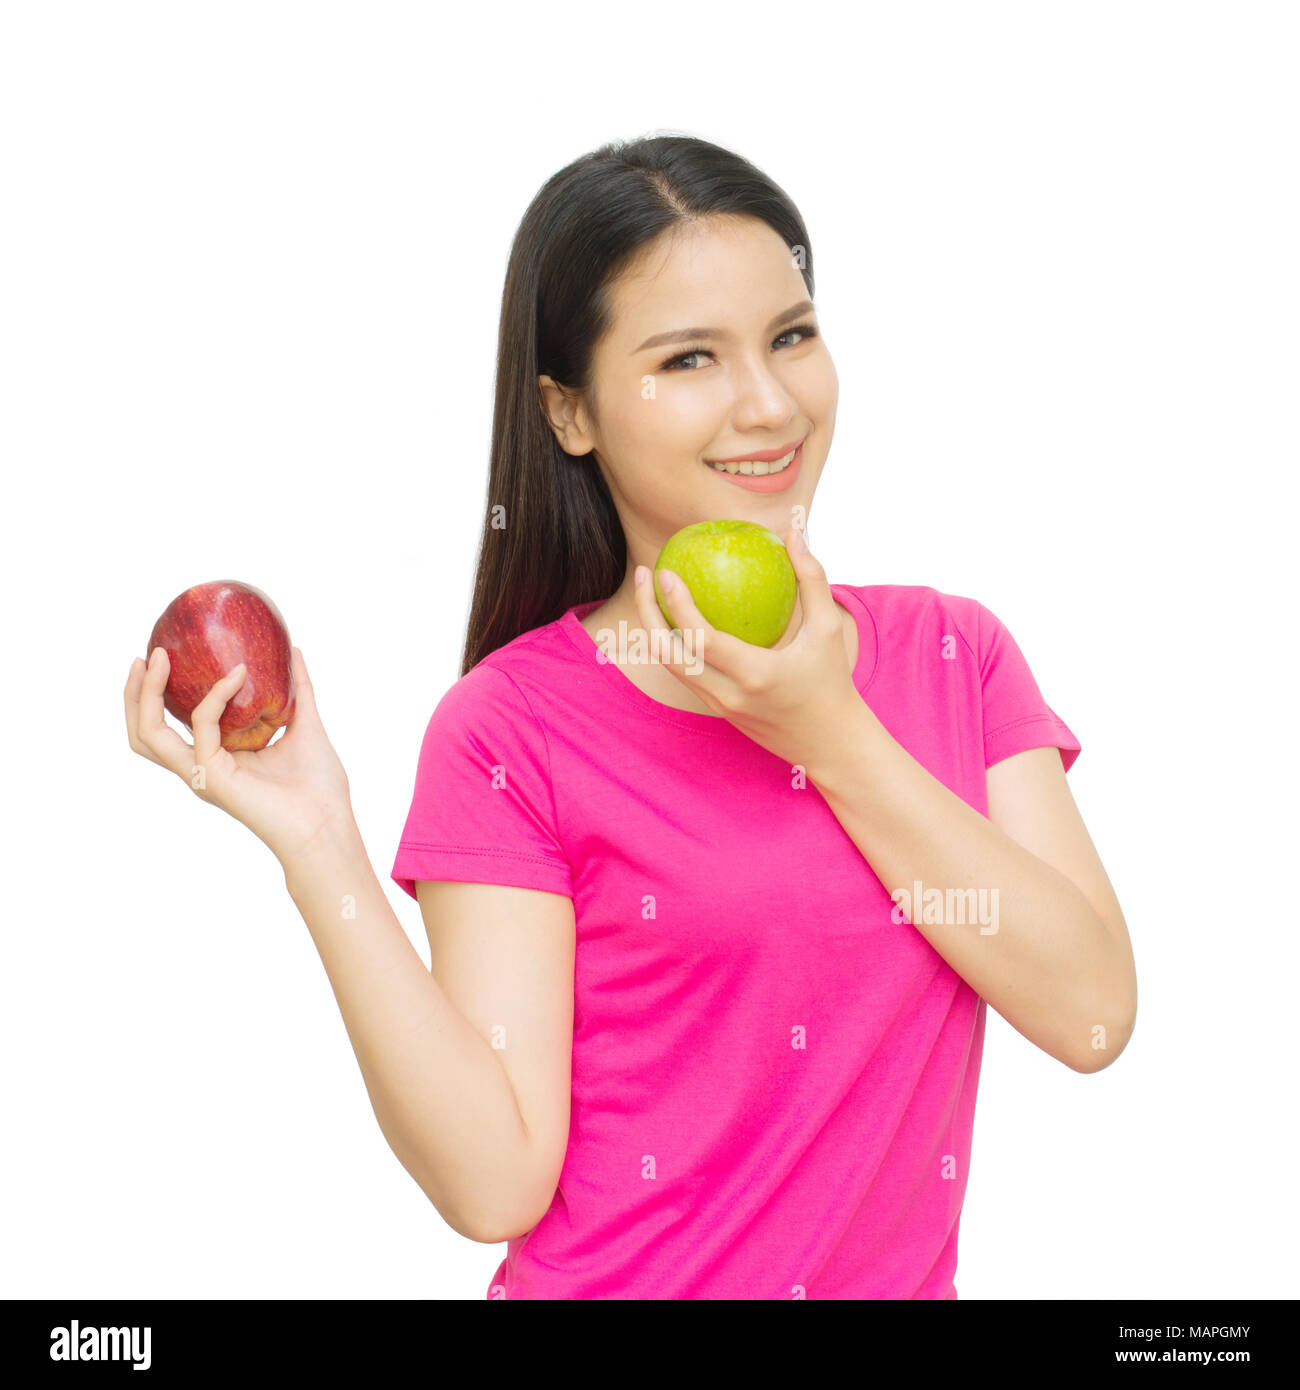 Ragazza salute visualizza rosso e verde mela con faccia sorridere isolato su sfondo bianco, mangiare sano concetto alimentare Foto Stock